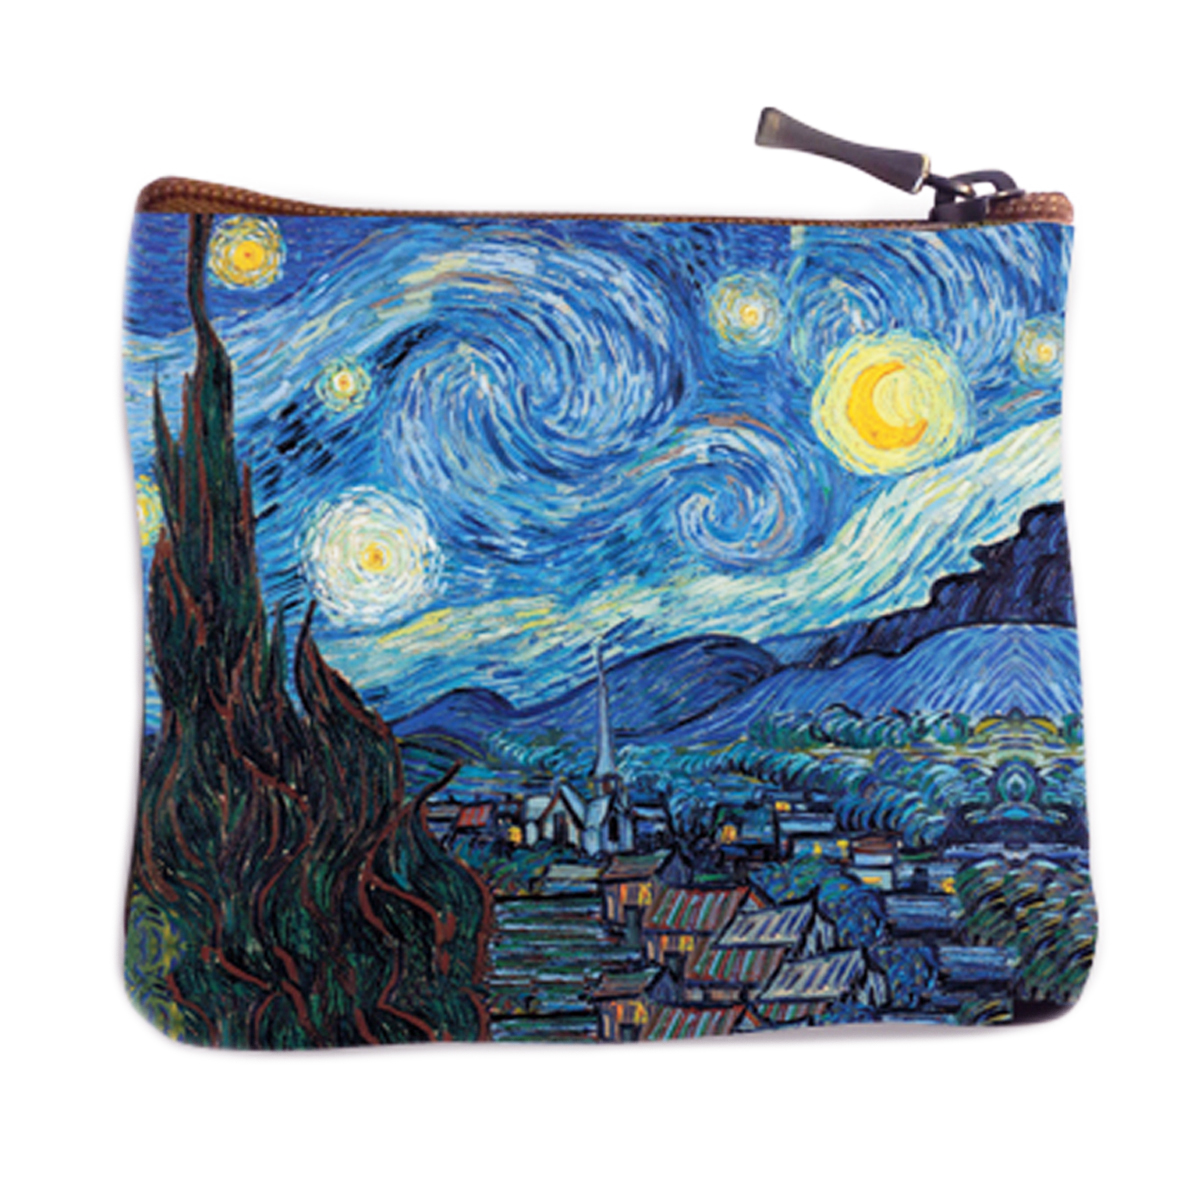 Porte-monnaie artisanal \'Vincent Van Gogh\' (Nuit Etoilée)  - 12x10 cm - [Q9231]